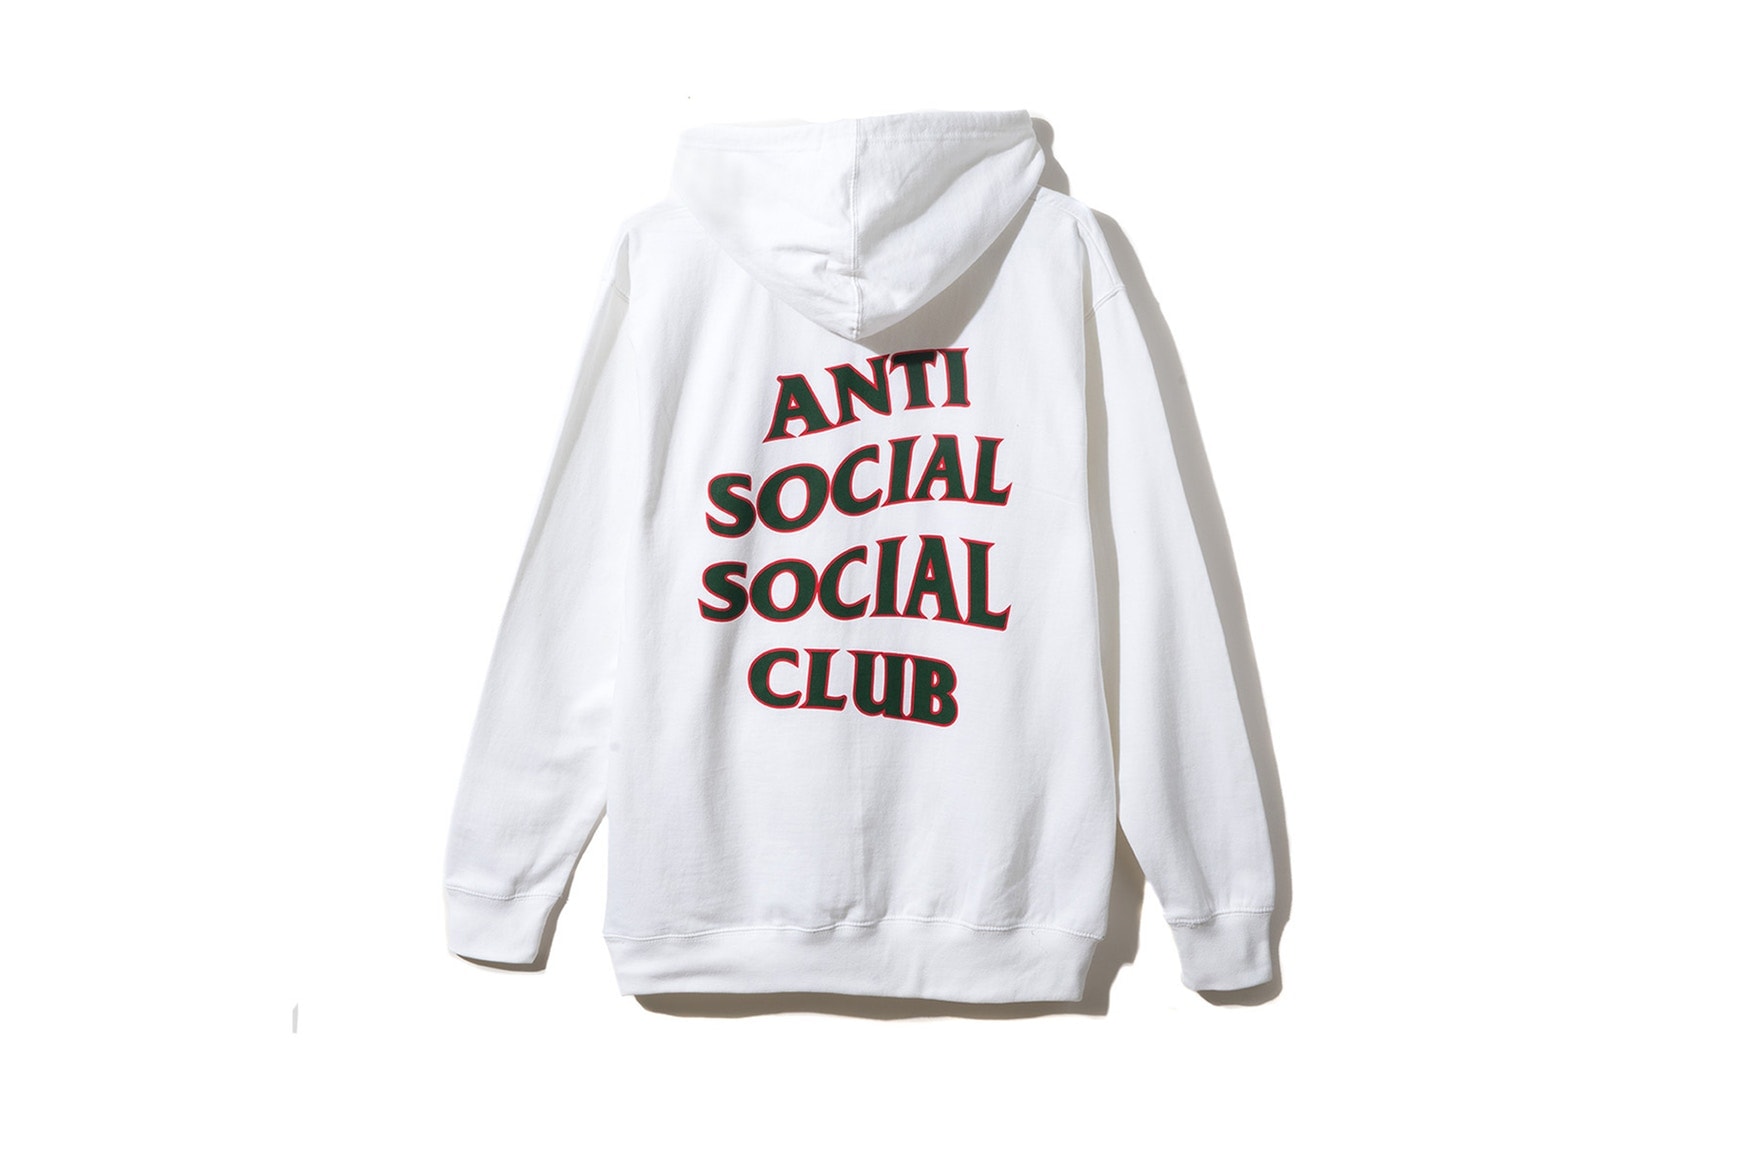 안티 소셜 소셜 클럽 2017 가을 겨울 컬렉션 후드 티셔츠 모자 양말 Anti Social Social Club Fall Winter Collection Hoodies T-shirts Caps Socks